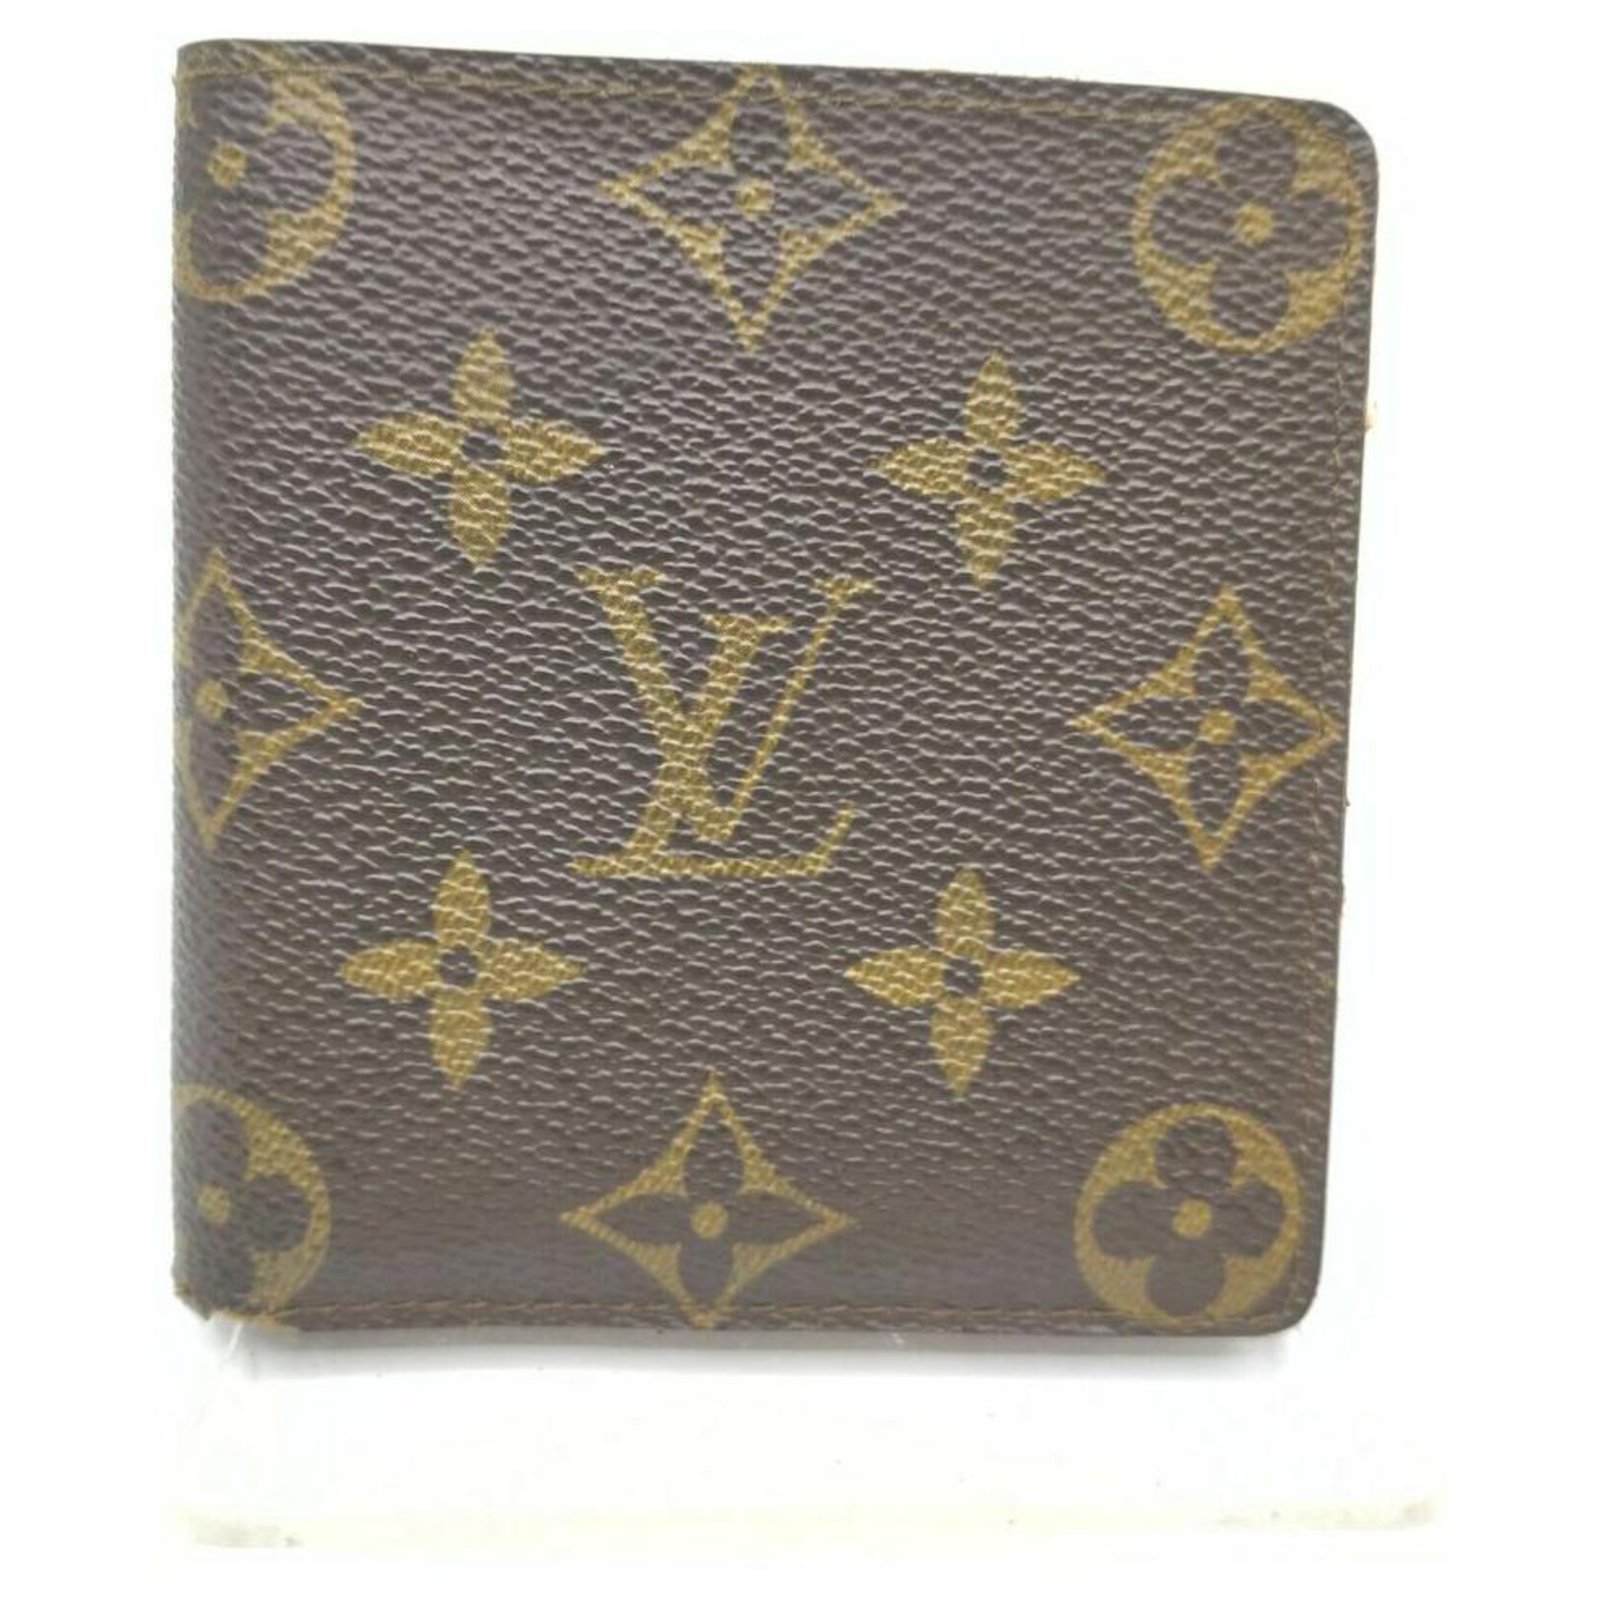  Louis Vuitton Cartera delgada monograma espejo edición